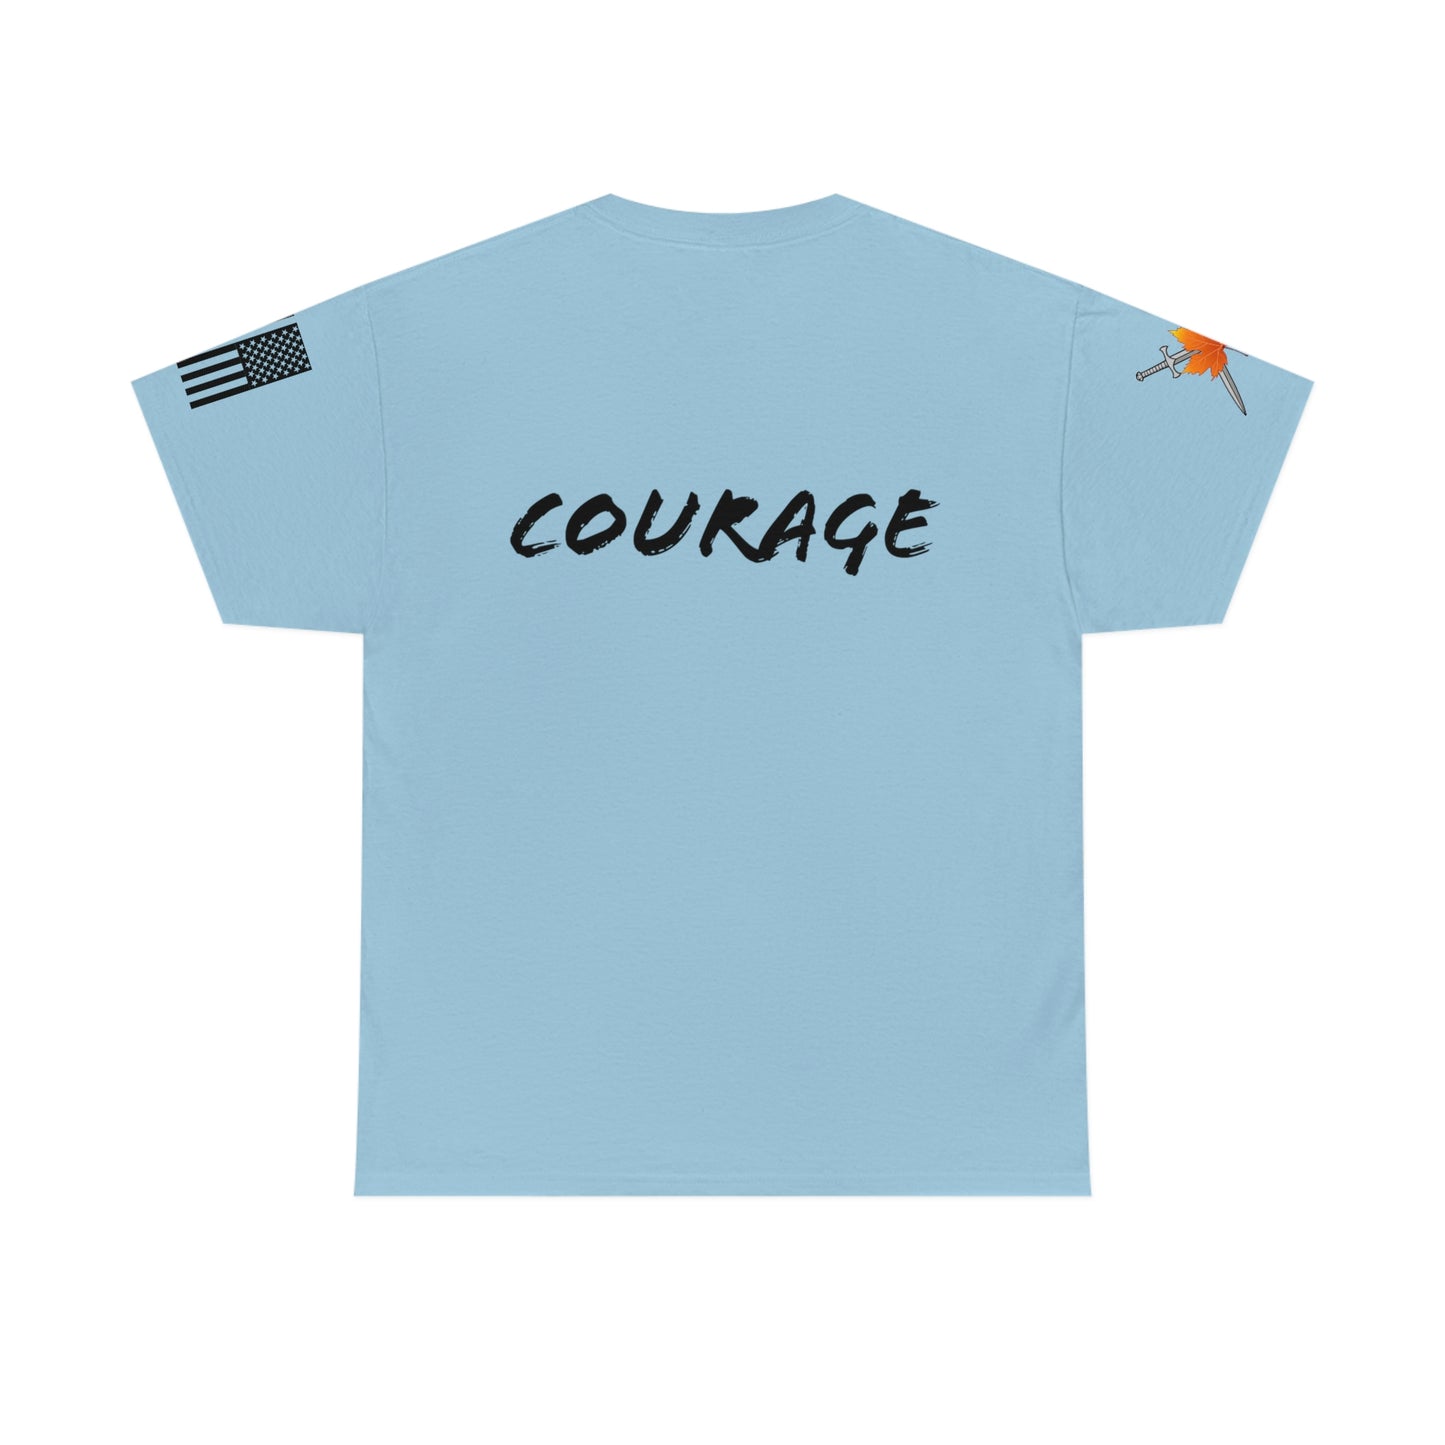 Autumn Knights - Short Sleeve Tee "Courage"